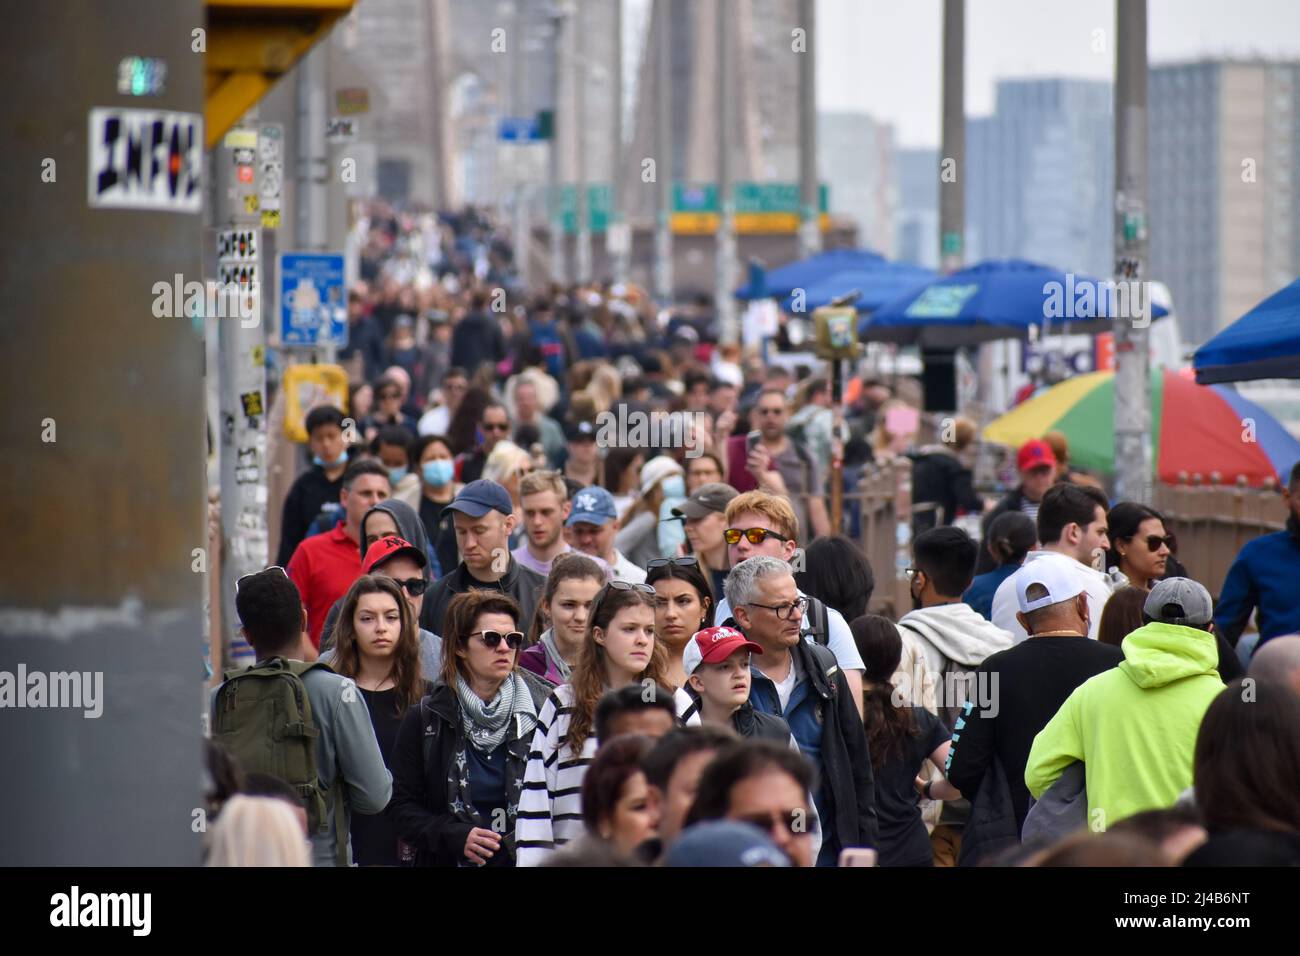 Les touristes reviennent à New York. Le 13 avril 2022, une foule importante traverse le pont de Brooklyn à New York. Banque D'Images